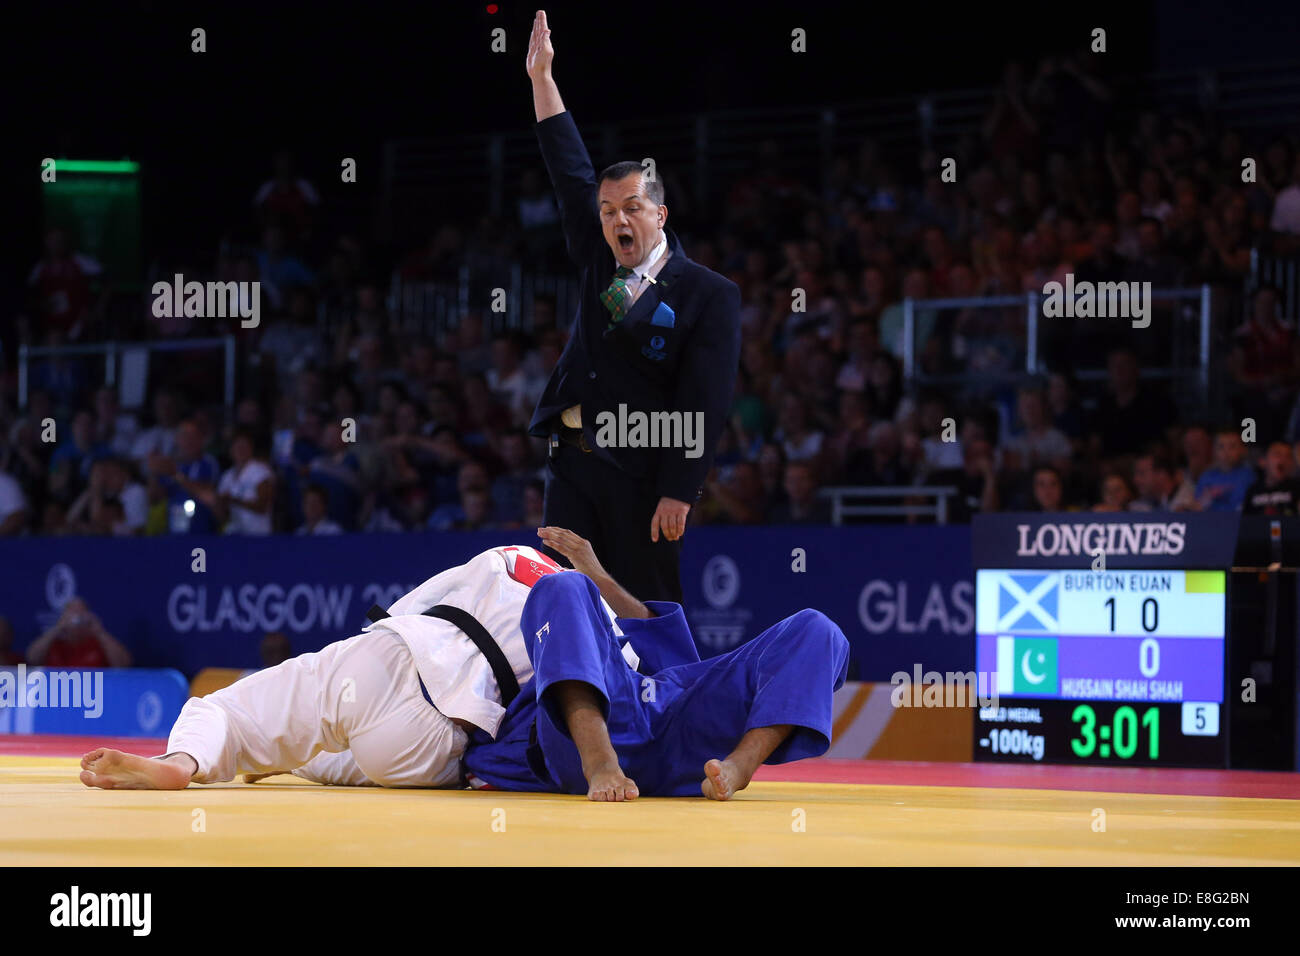 Euan Burton (SCO) (weiß) schlägt Shah Hussain (PAK) (blau) - Judo 100kg Final - SECC - Glasgow Schottland, Glasgow UK - 260714 - 2 Stockfoto